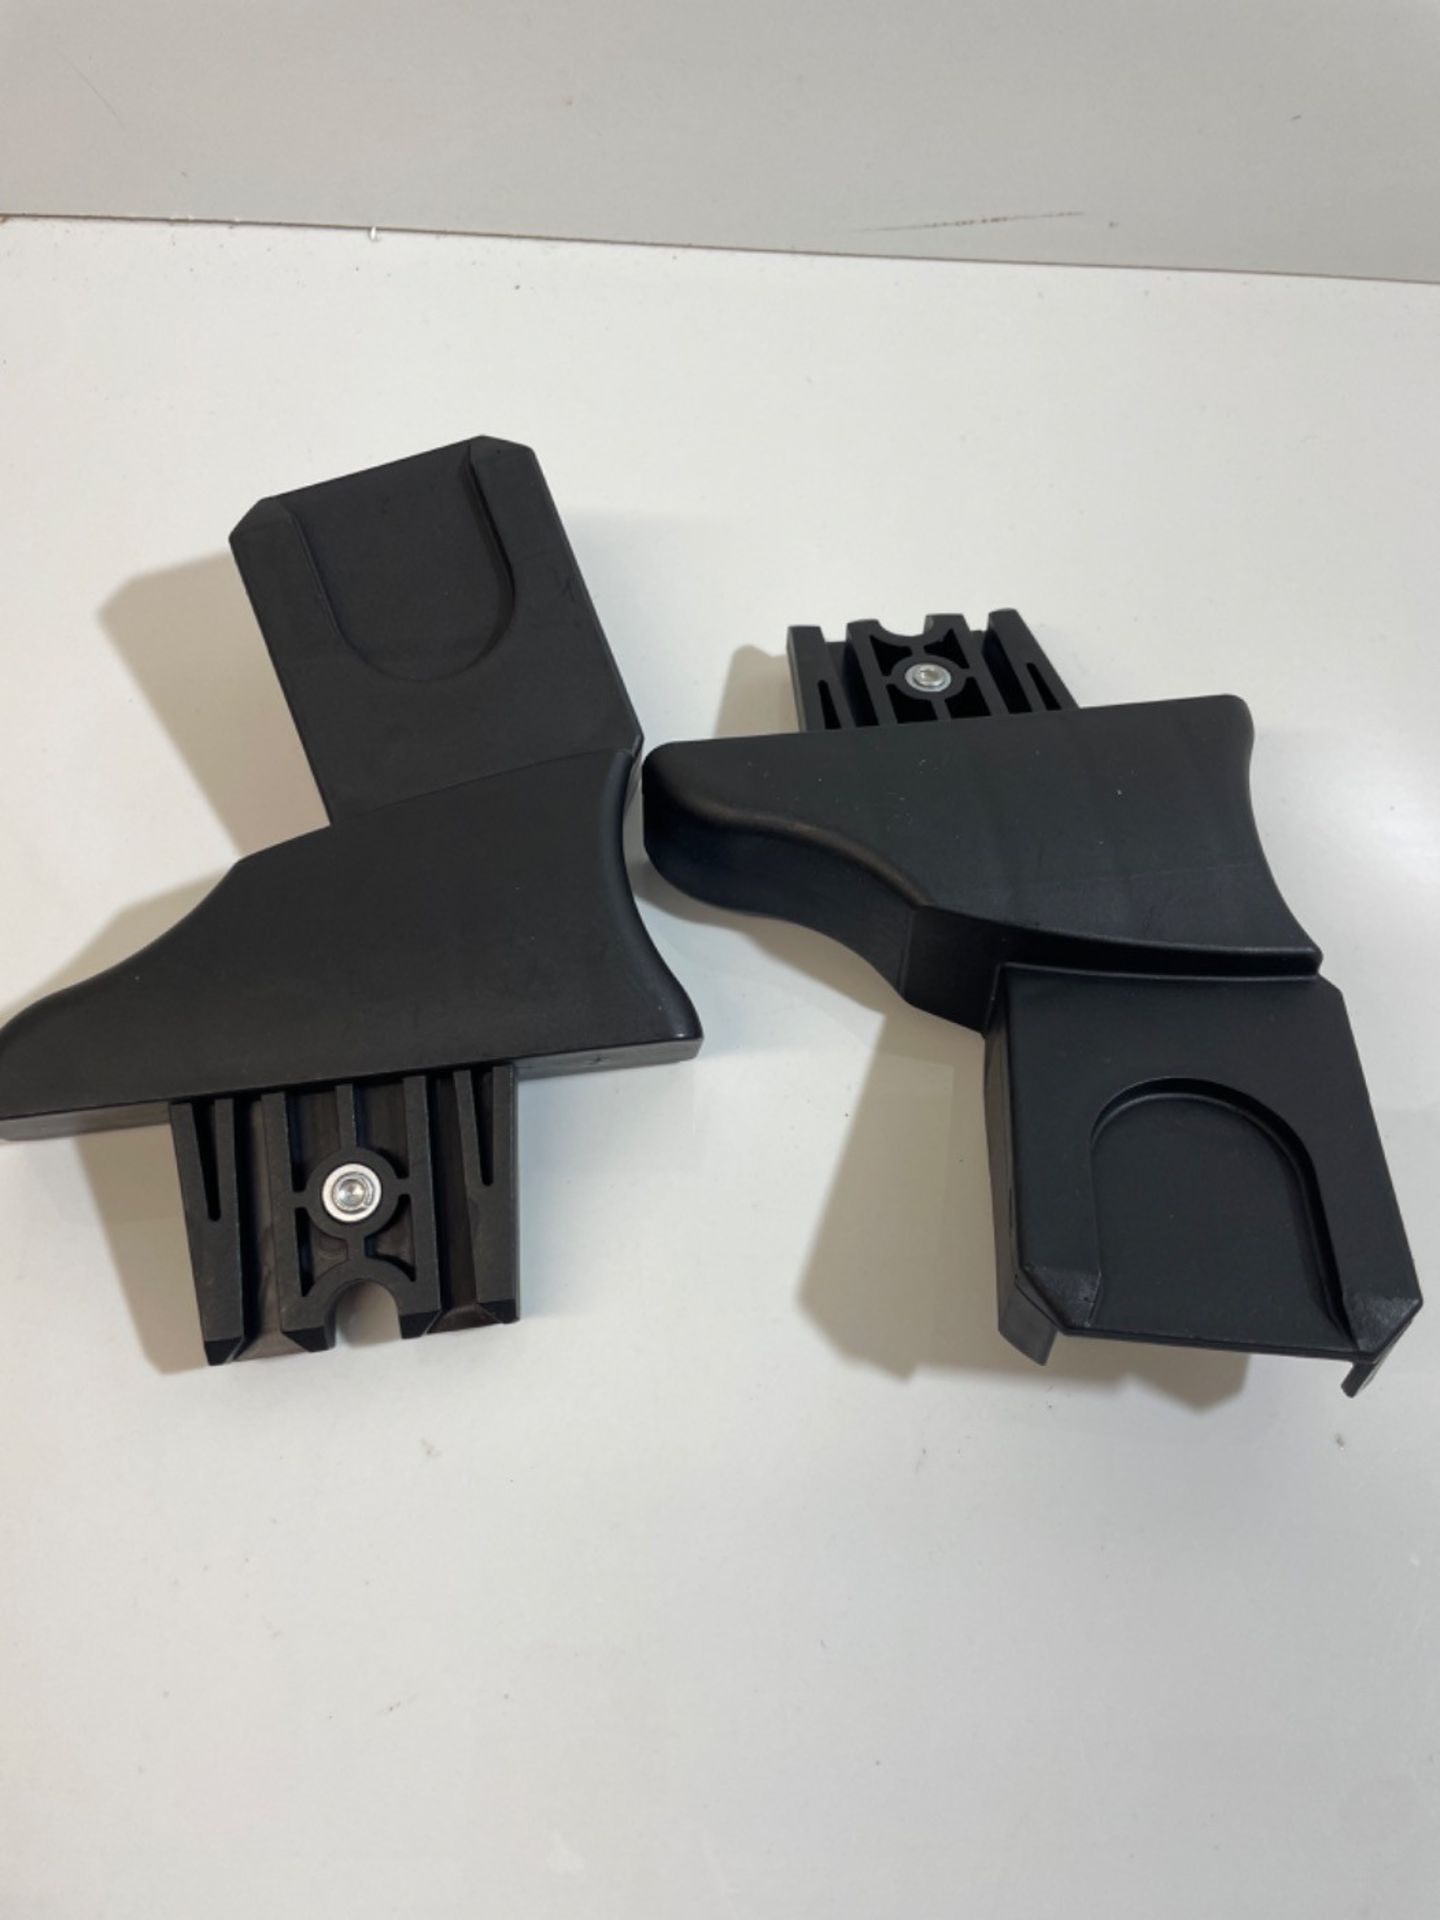 Venicci maxi cosi pebble cabrio and citi car seat adaptors for venicci frame - Image 2 of 3